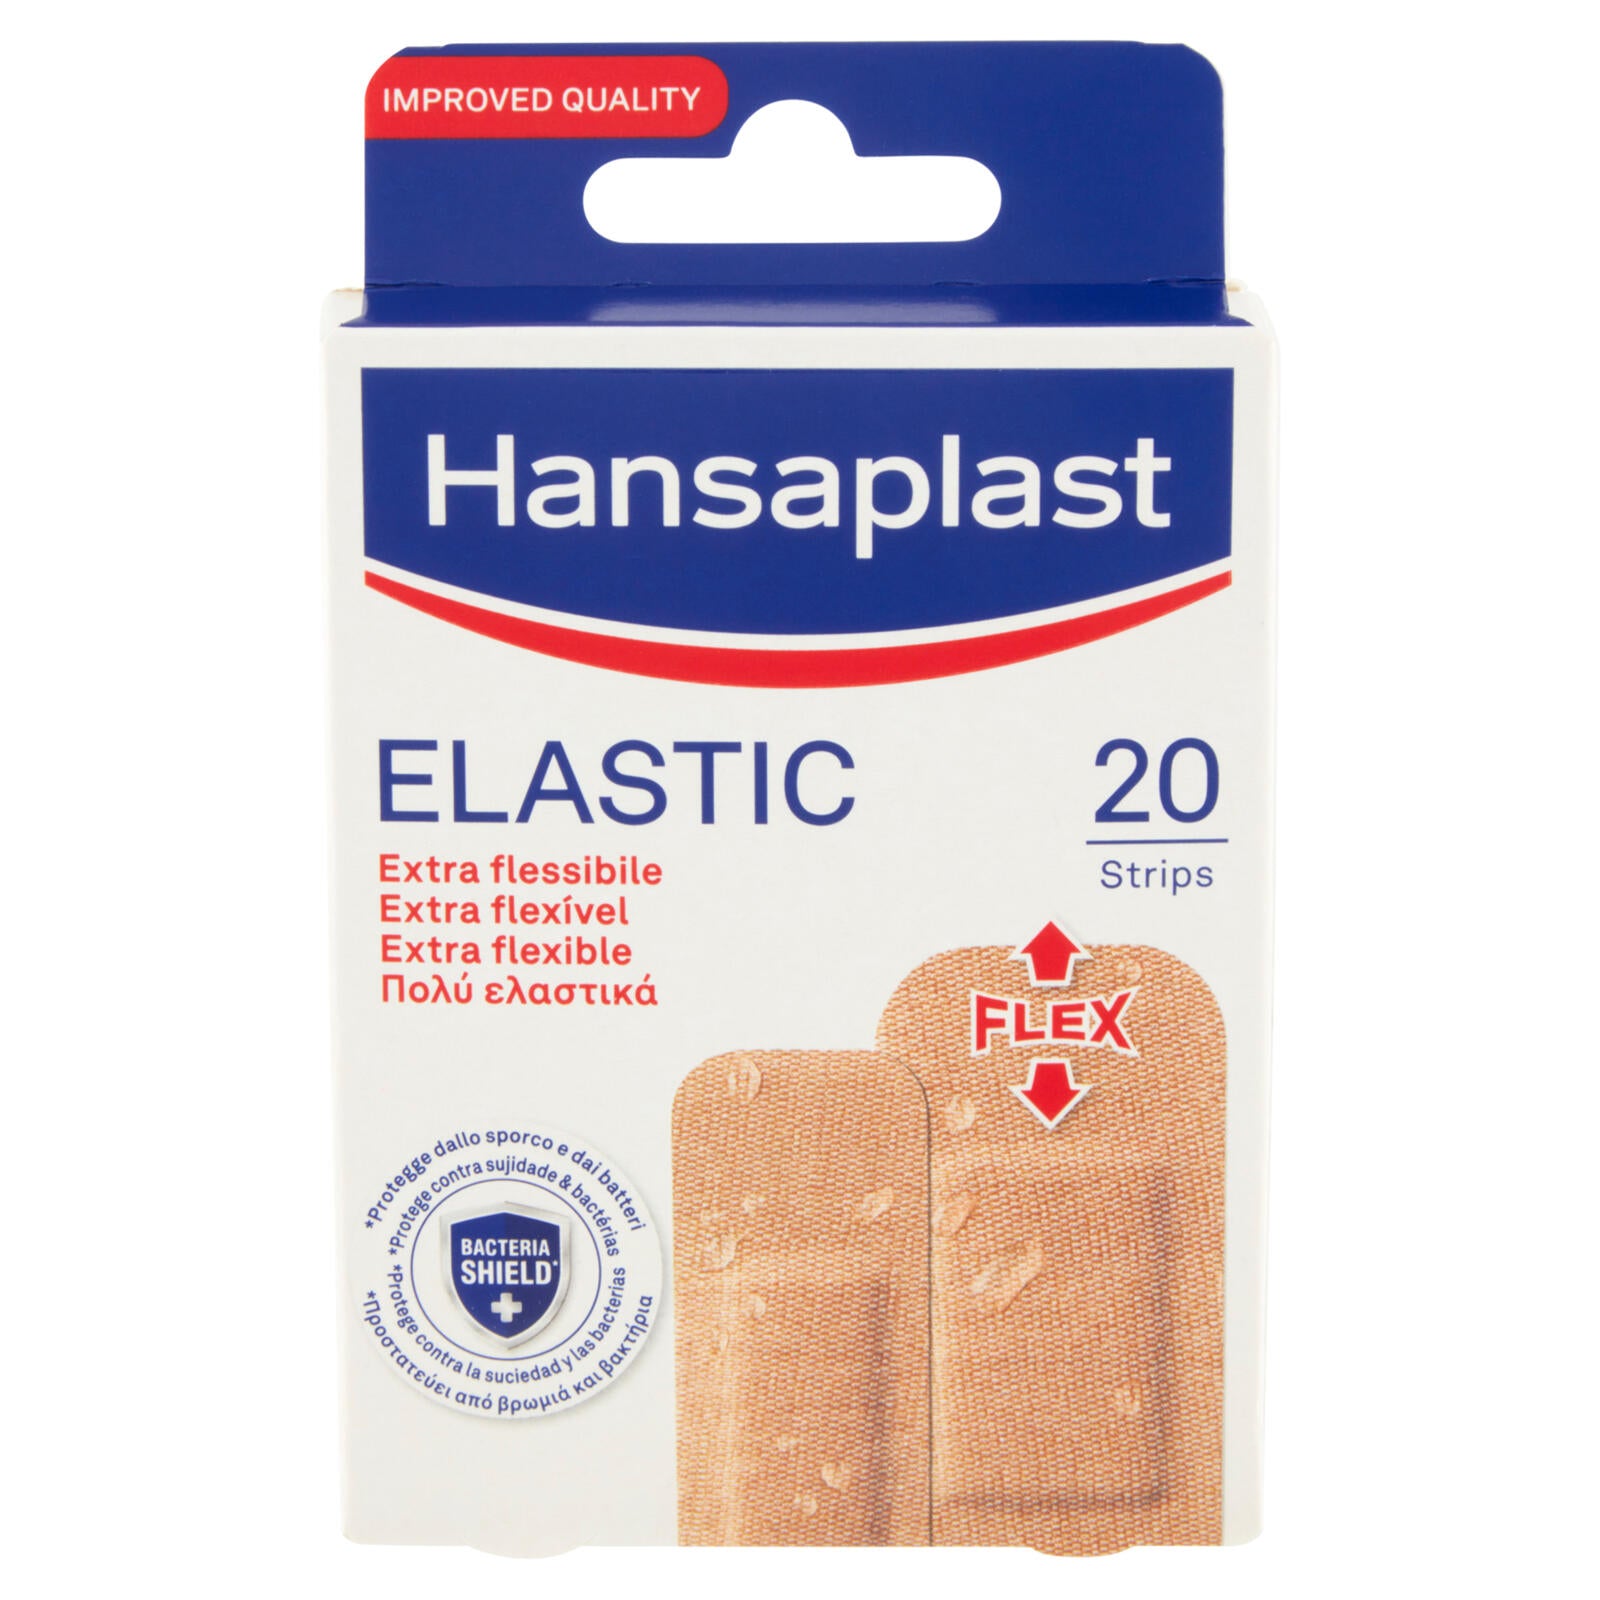 Hansaplast Elastic 20 pz